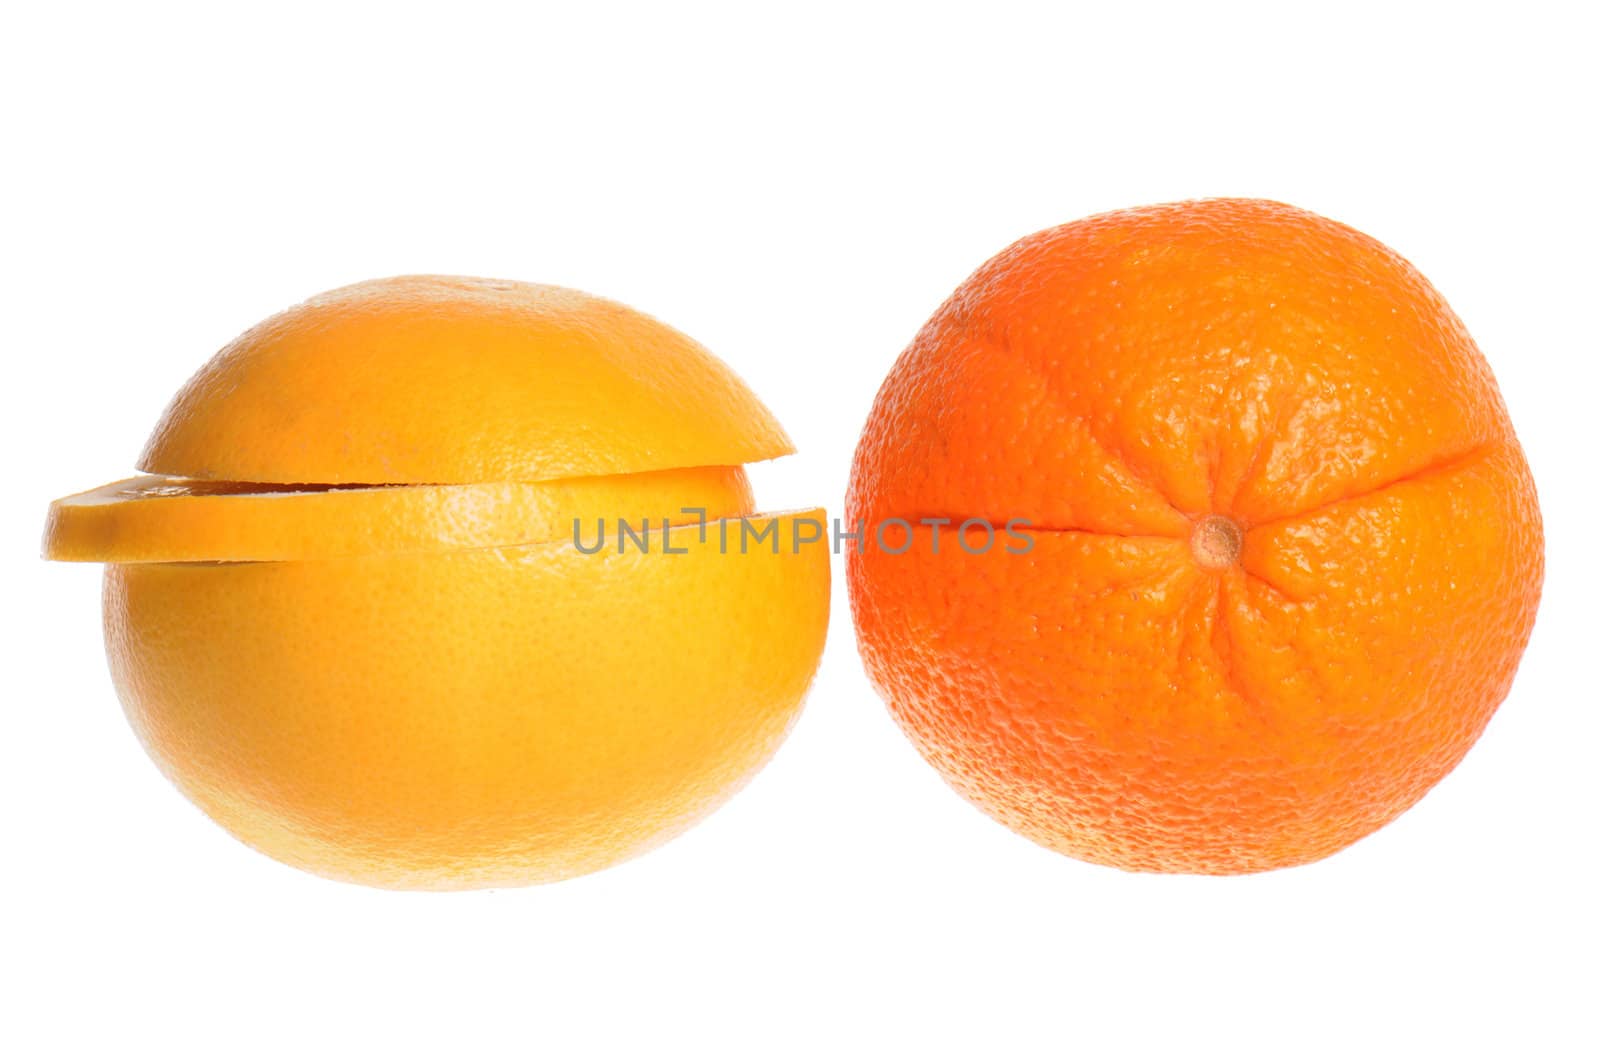 Grapefruit and orange isolated on white background